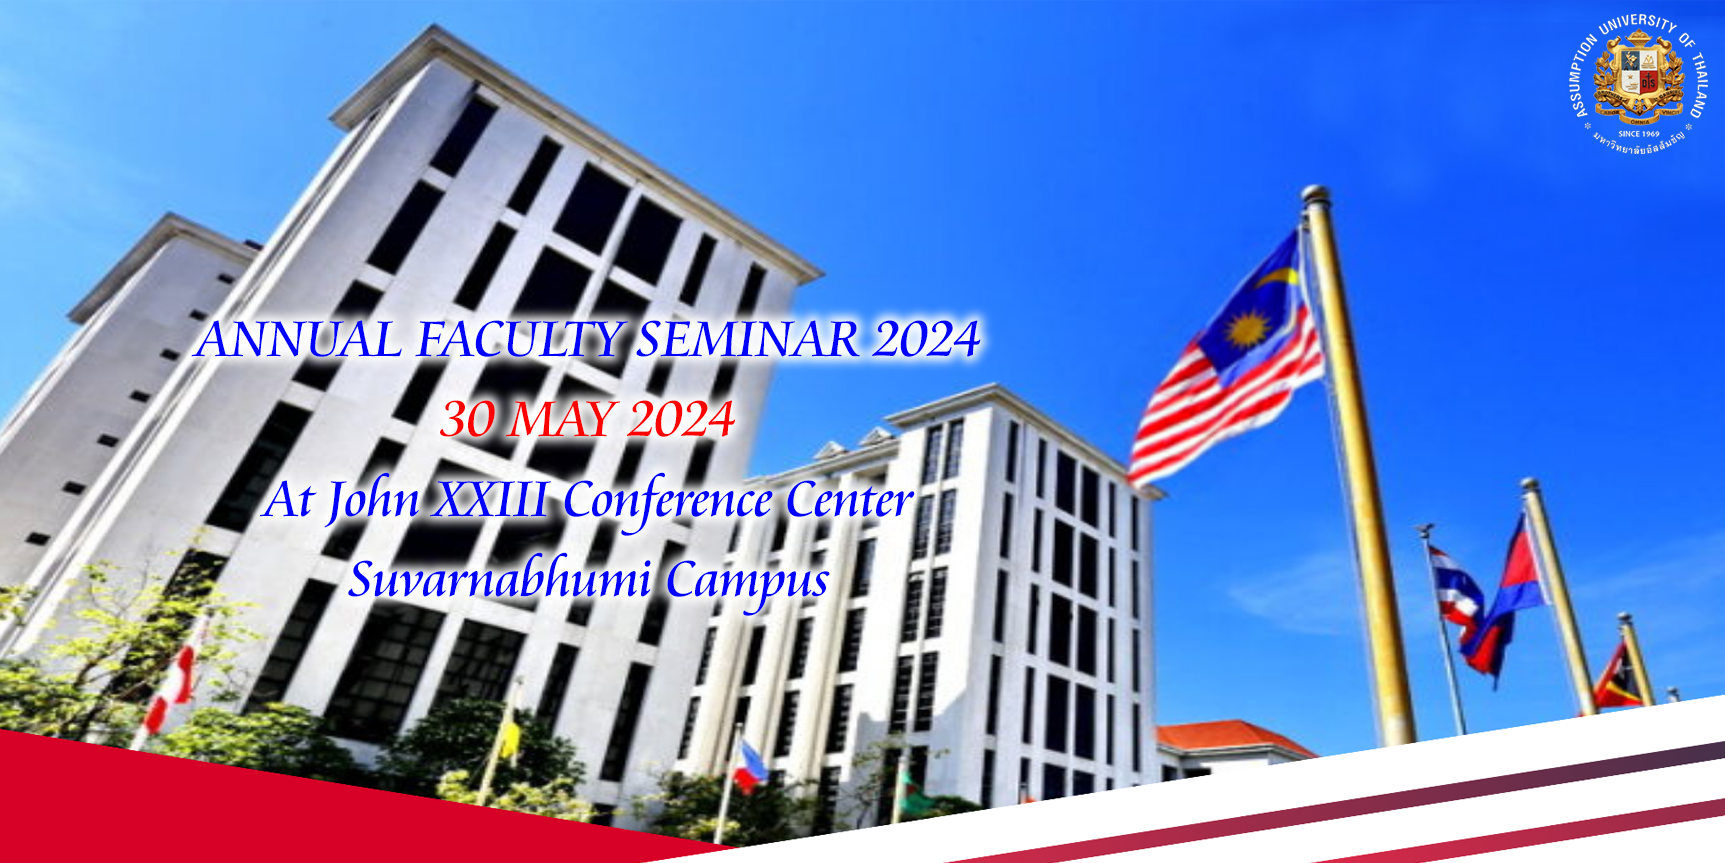 Annual Faculty Seminar 2024